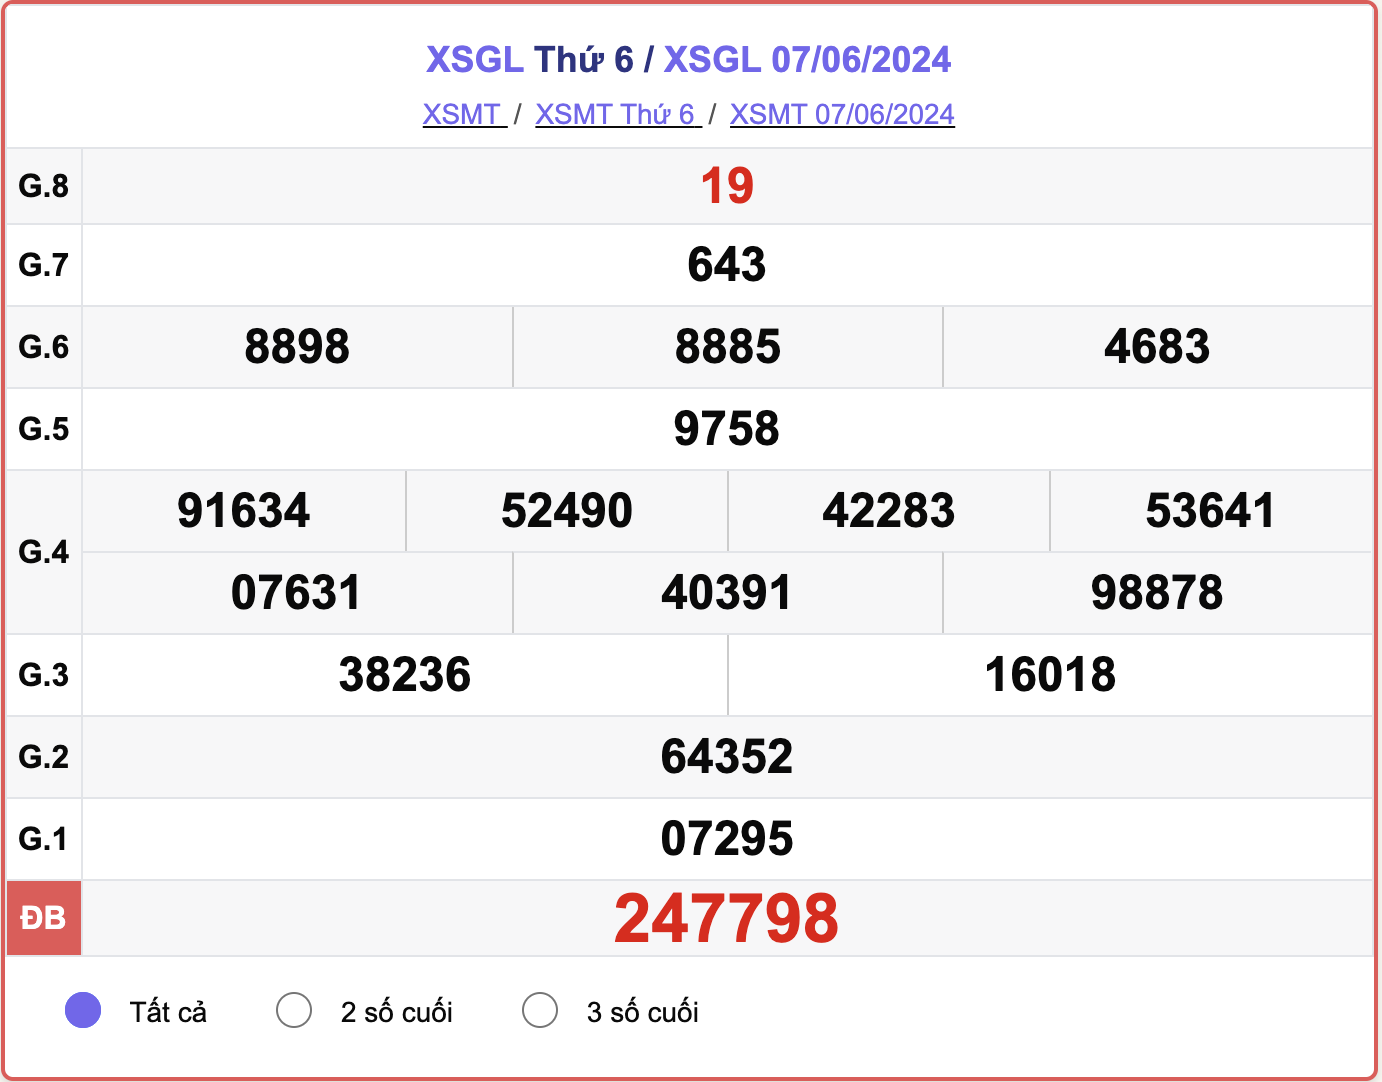 XSGL 7/6, kết quả xổ số Gia Lai hôm nay 7/6/2024.